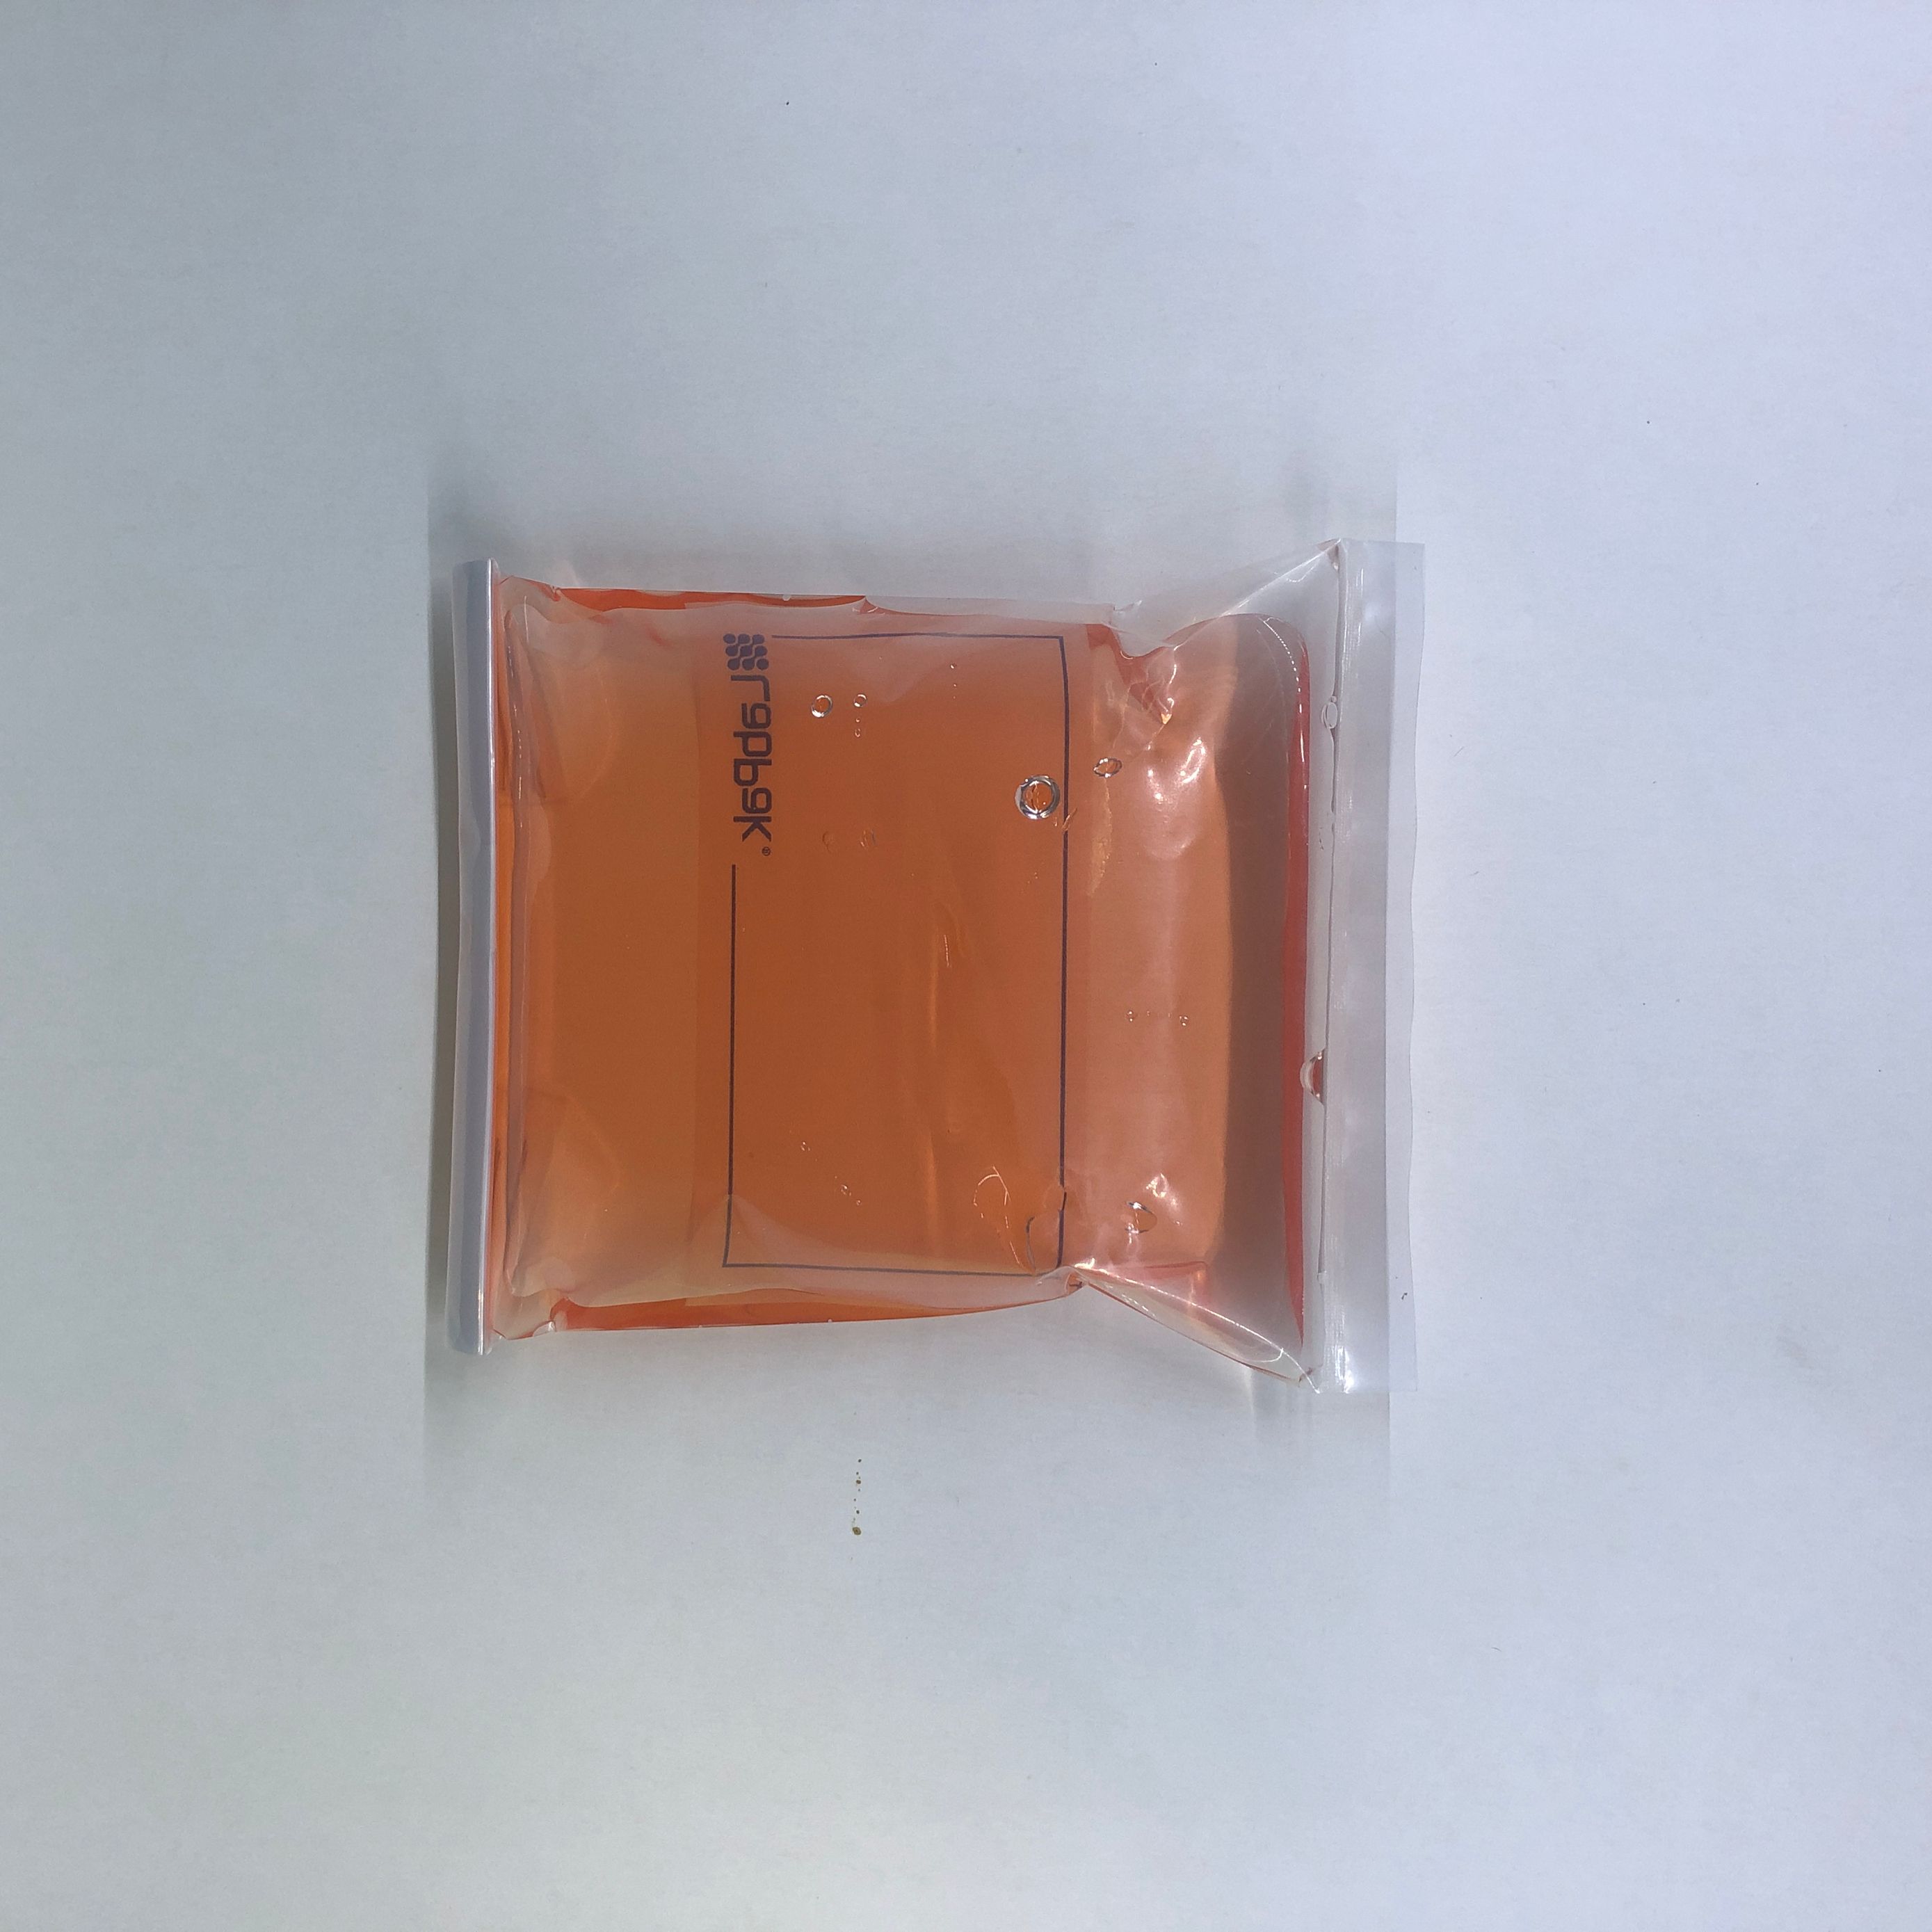 24 oz sterile sampling bag Featured Image